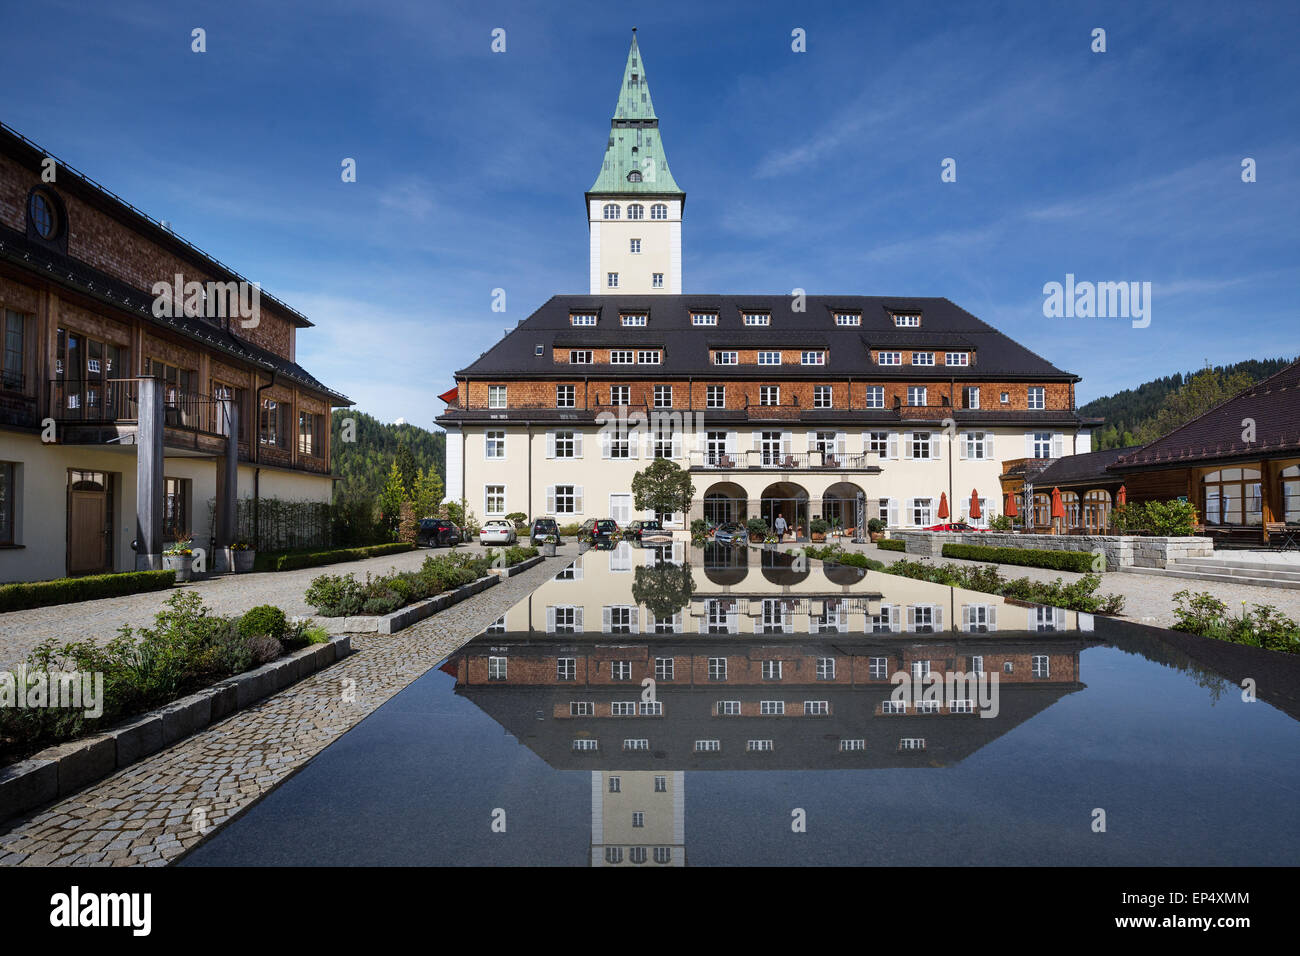 Schloss Elmau castle hotel avec tour reflète dans la fontaine, lieu de la sommet du G7 de 2015, Klais, Werdenfelser Land Banque D'Images